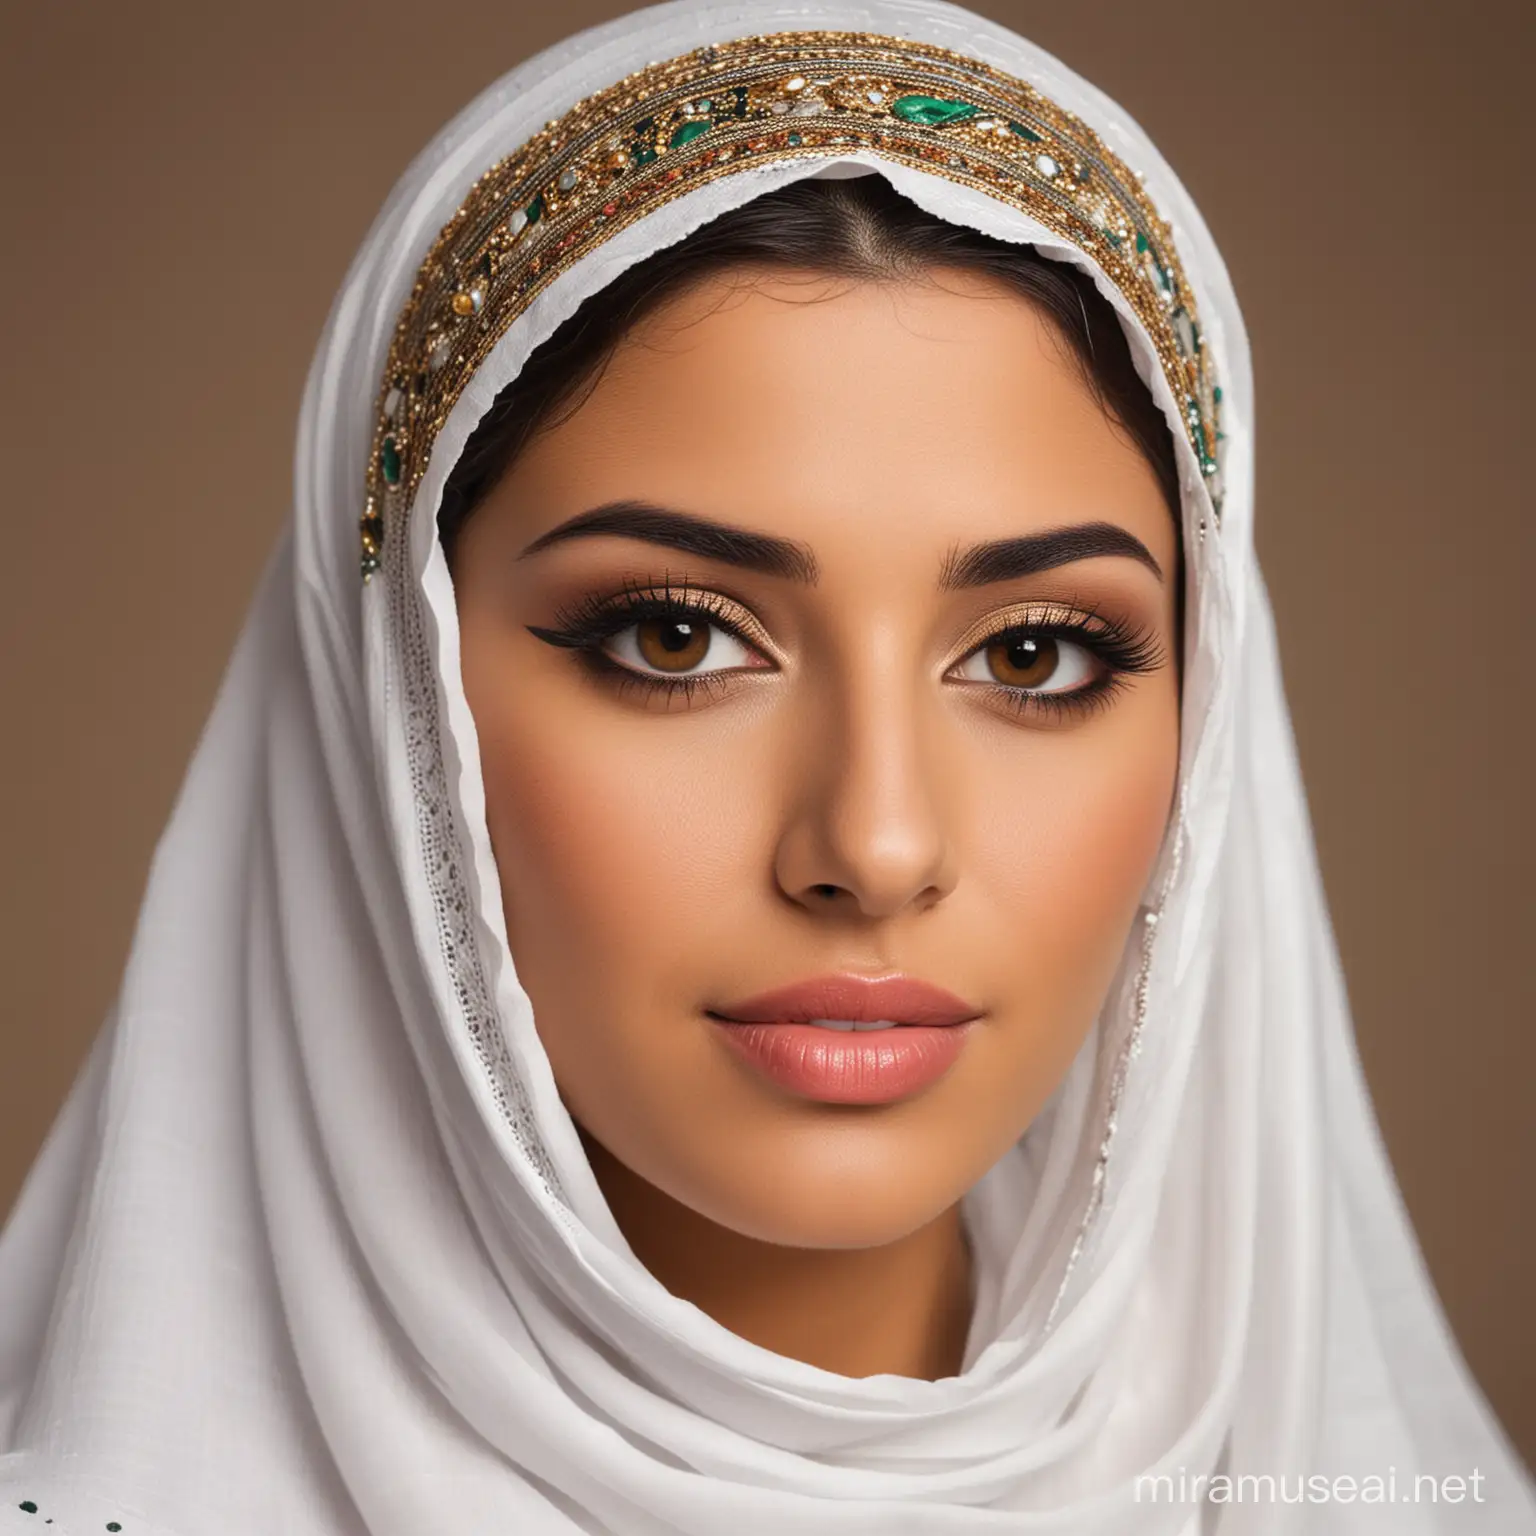 Elegant Arab Woman in Traditional Attire